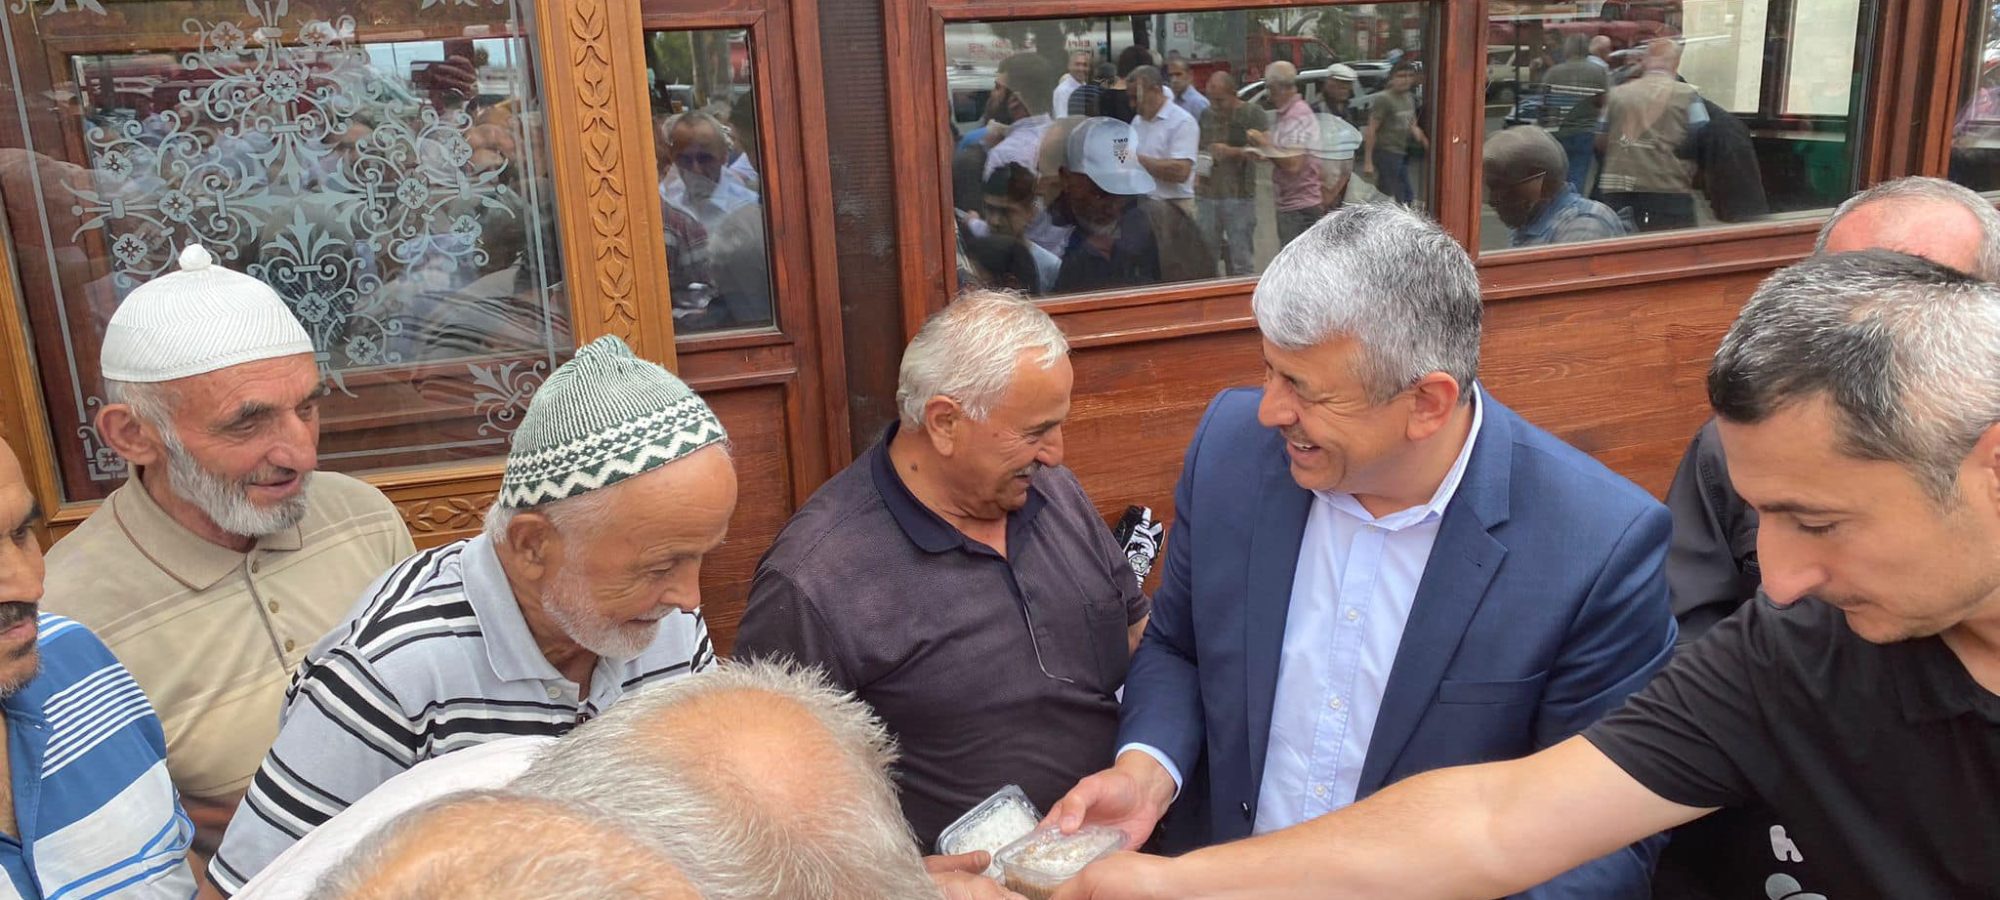 Espiye Belediye Başkanı Mustafa KARADERE vatandaşlara aşure ikram etti